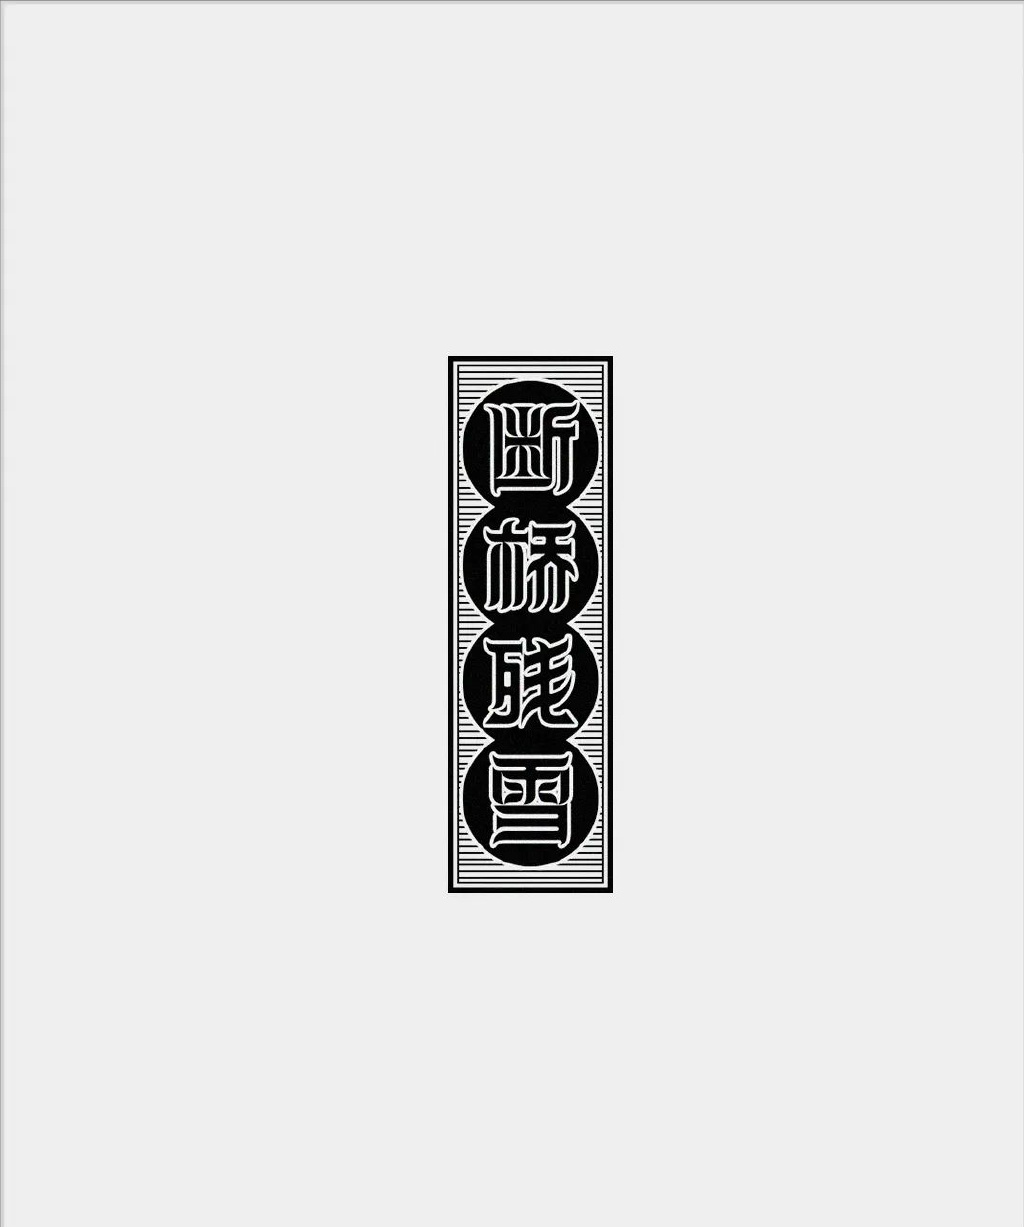 【字体设计】汉字设计的均衡和设计规范